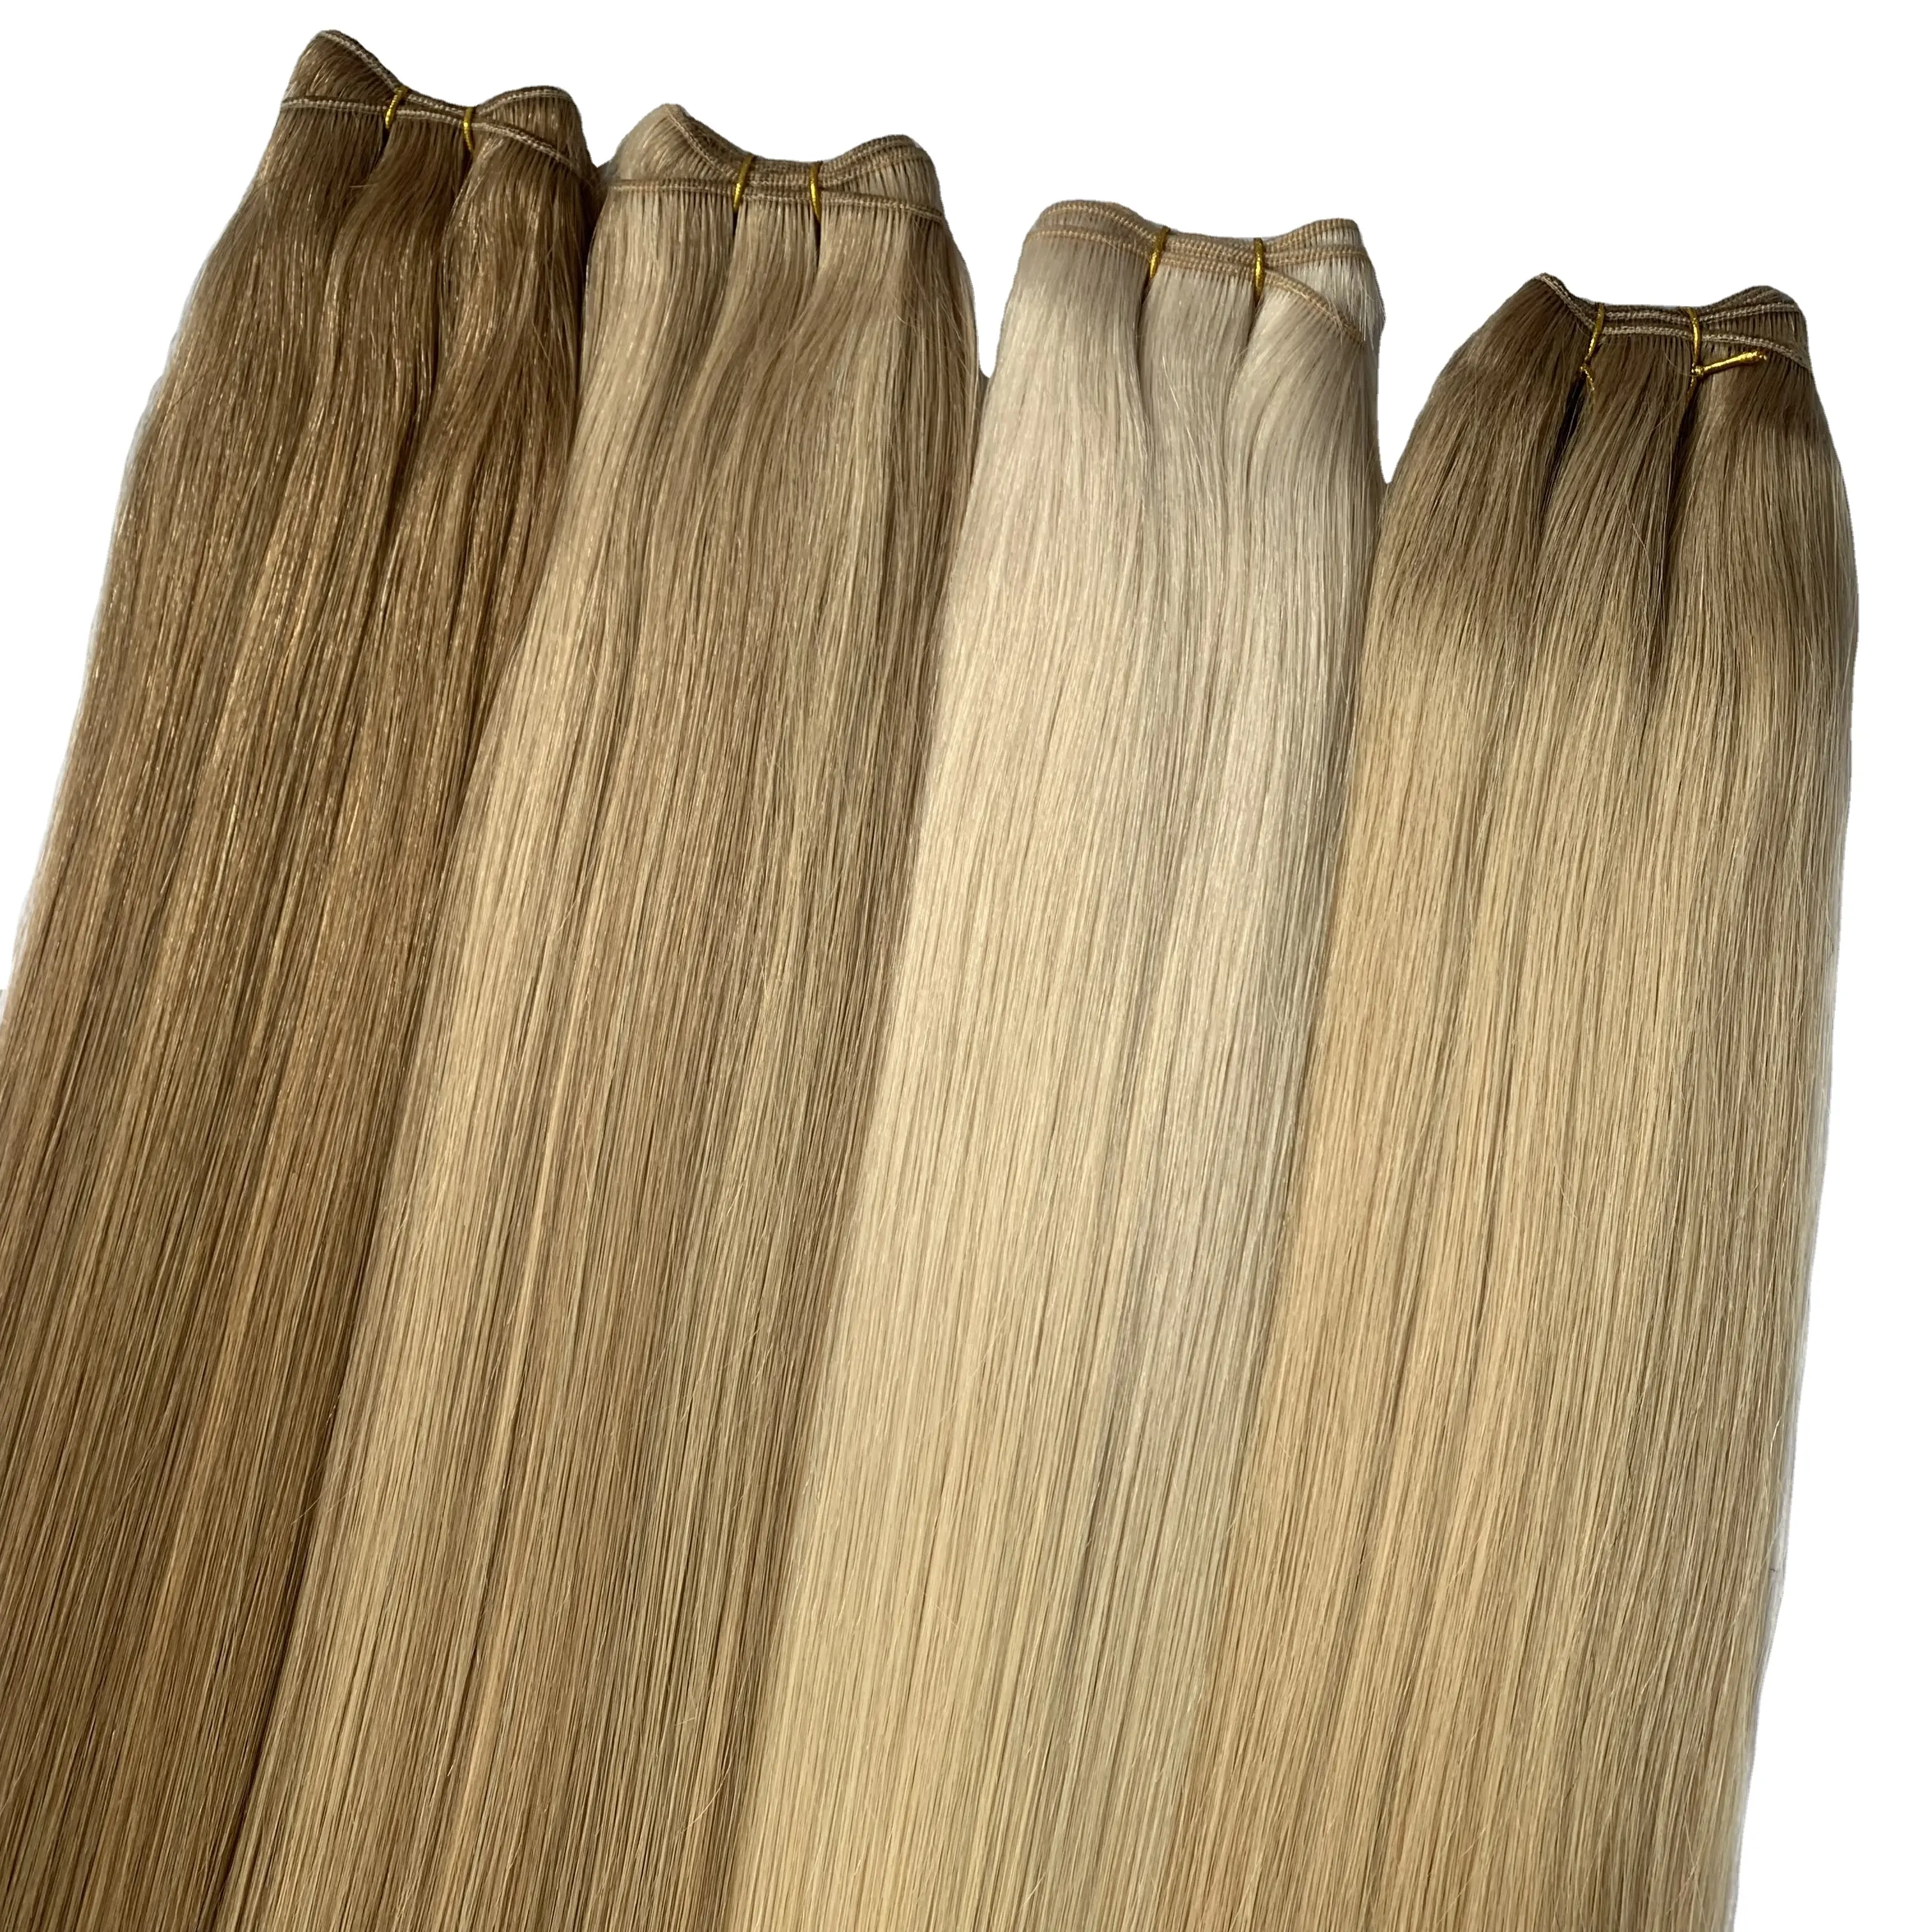 Commercio all'ingrosso naturale 100% Remy capelli umani lisci fatti a macchina estensione dei capelli di trama doppia tessitura dei capelli disegnati per le donne di bellezza